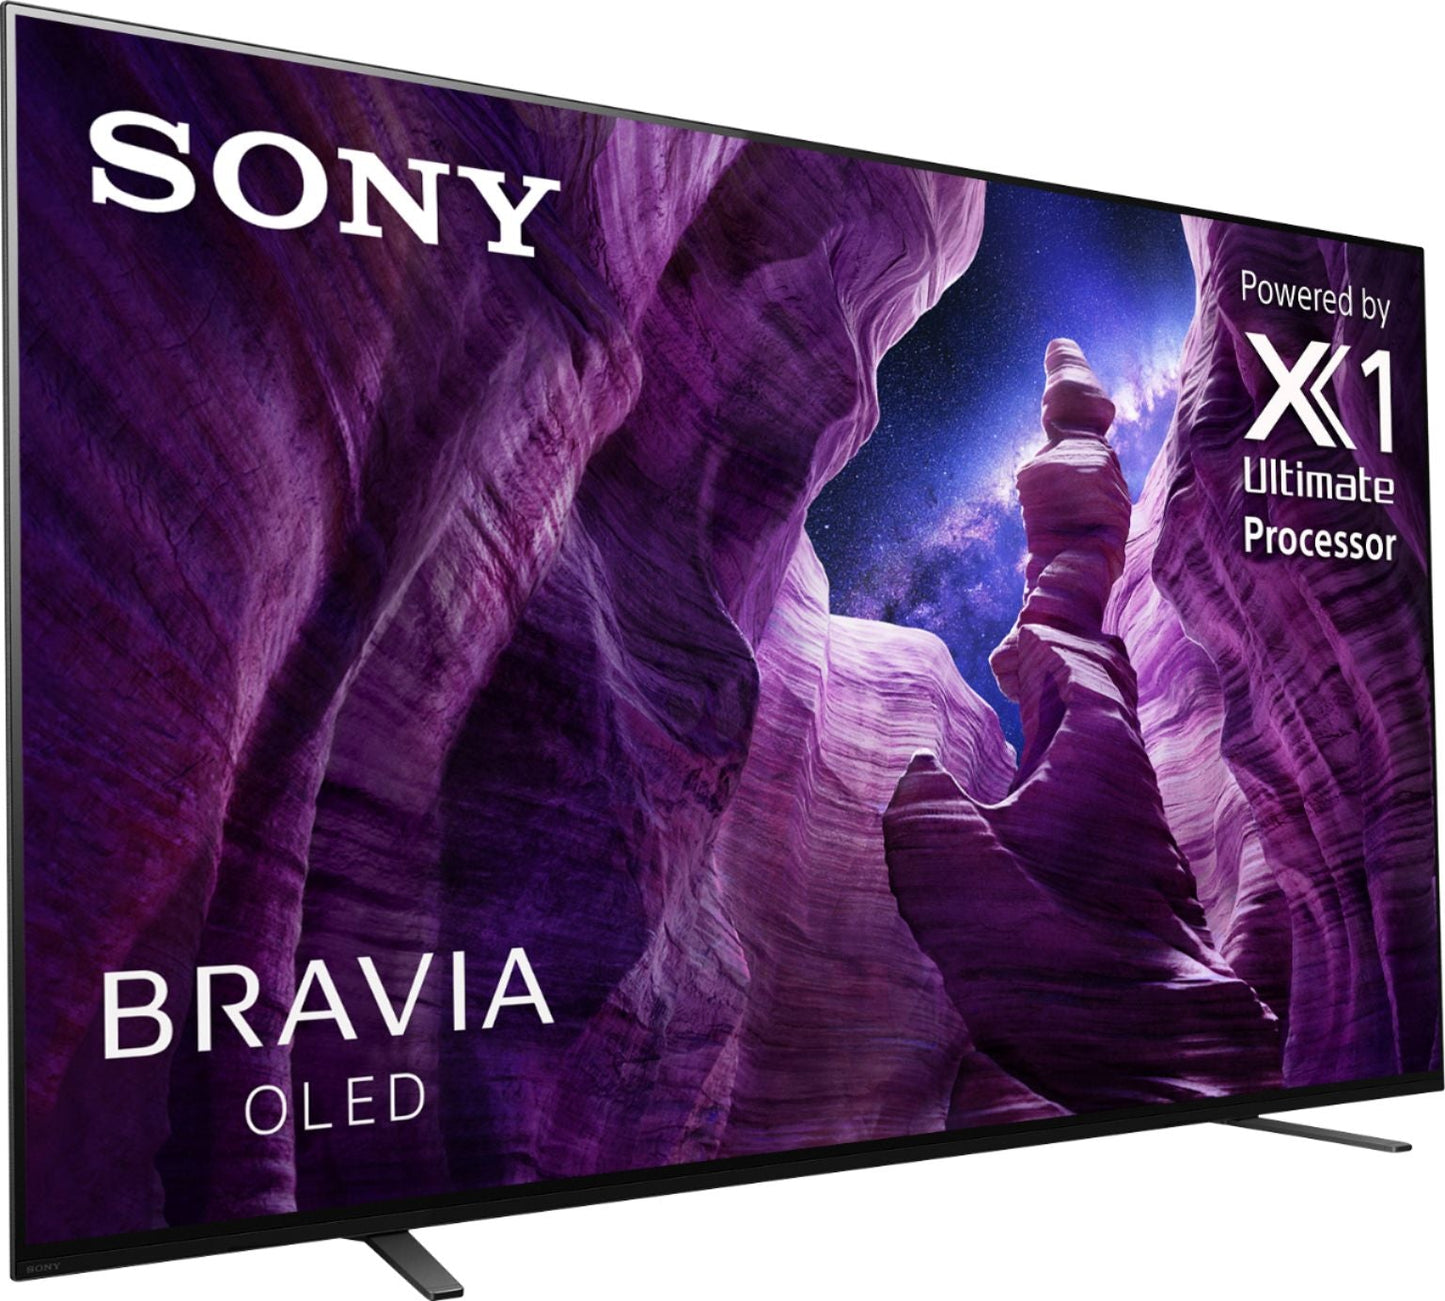 Sony A8H 65" Class HDR 4K UHD Smart OLED TV XBR65A8H